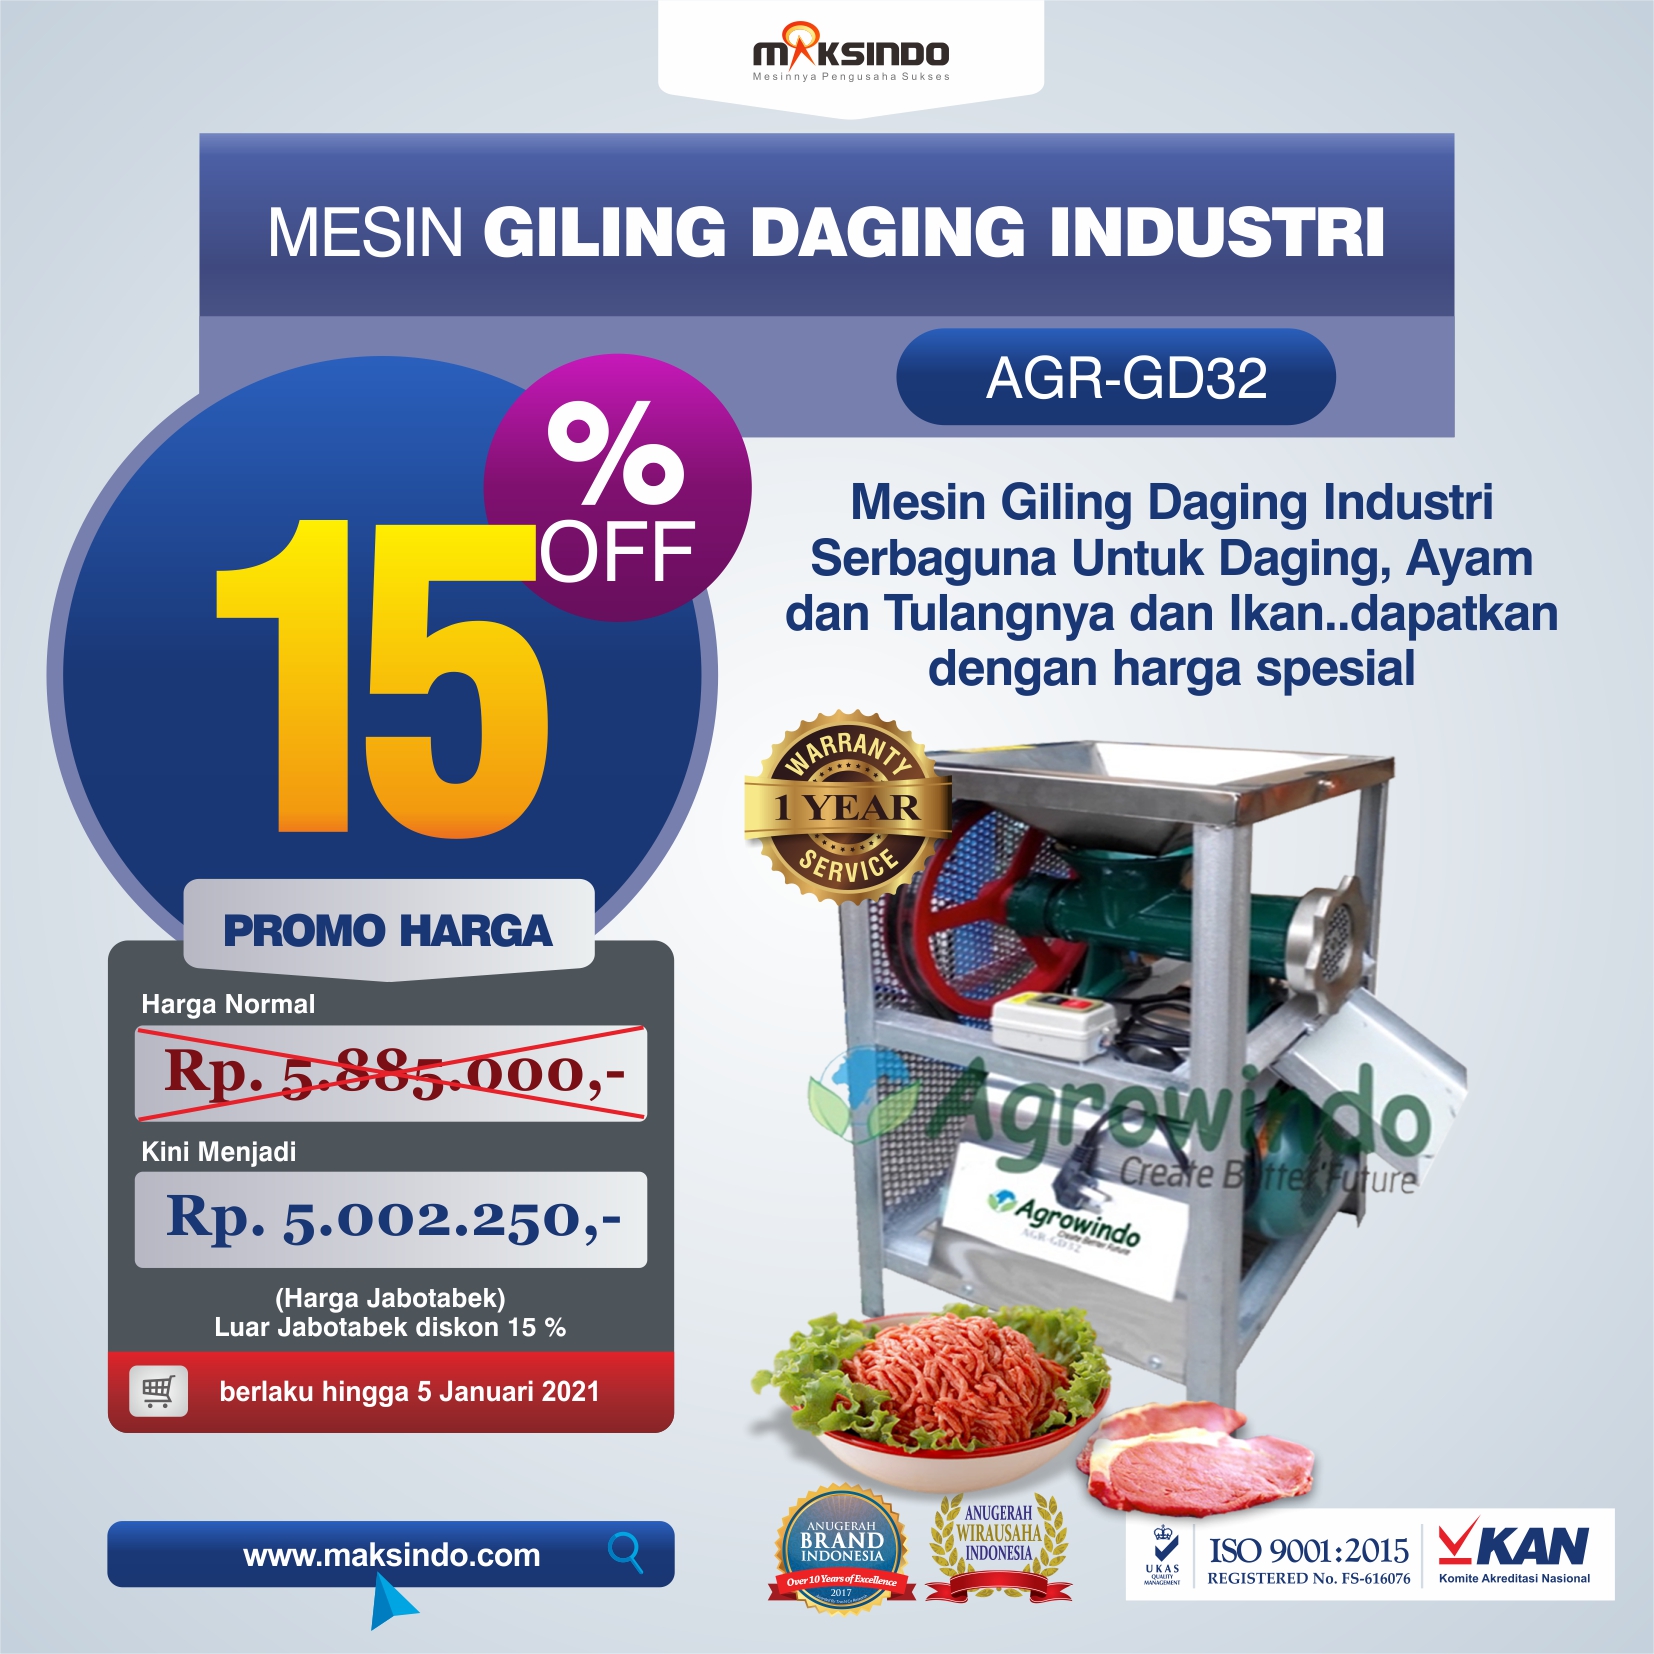 Jual Mesin Giling Daging Industri (AGR-GD32) di Semarang